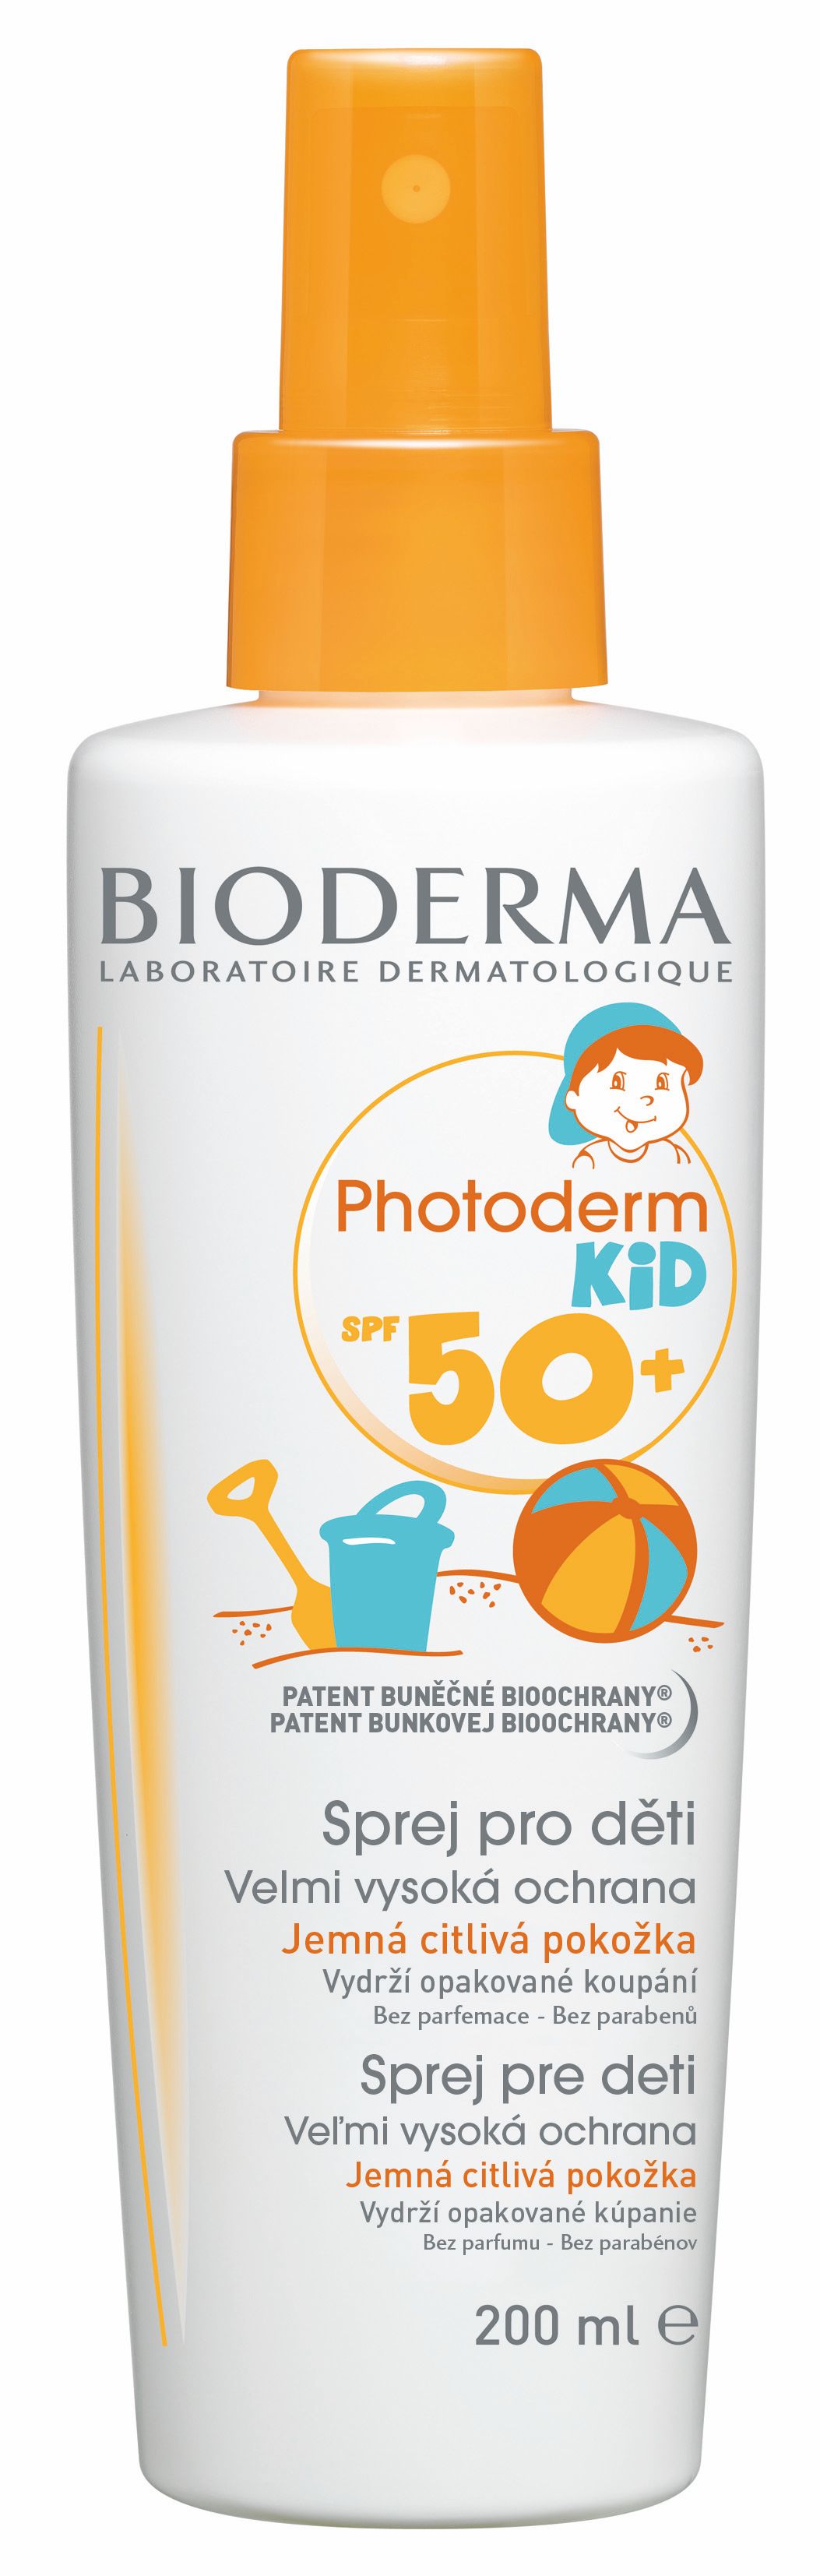 BIODERMA Photoderm KID SPF50+ opalovací sprej 200 ml BIODERMA